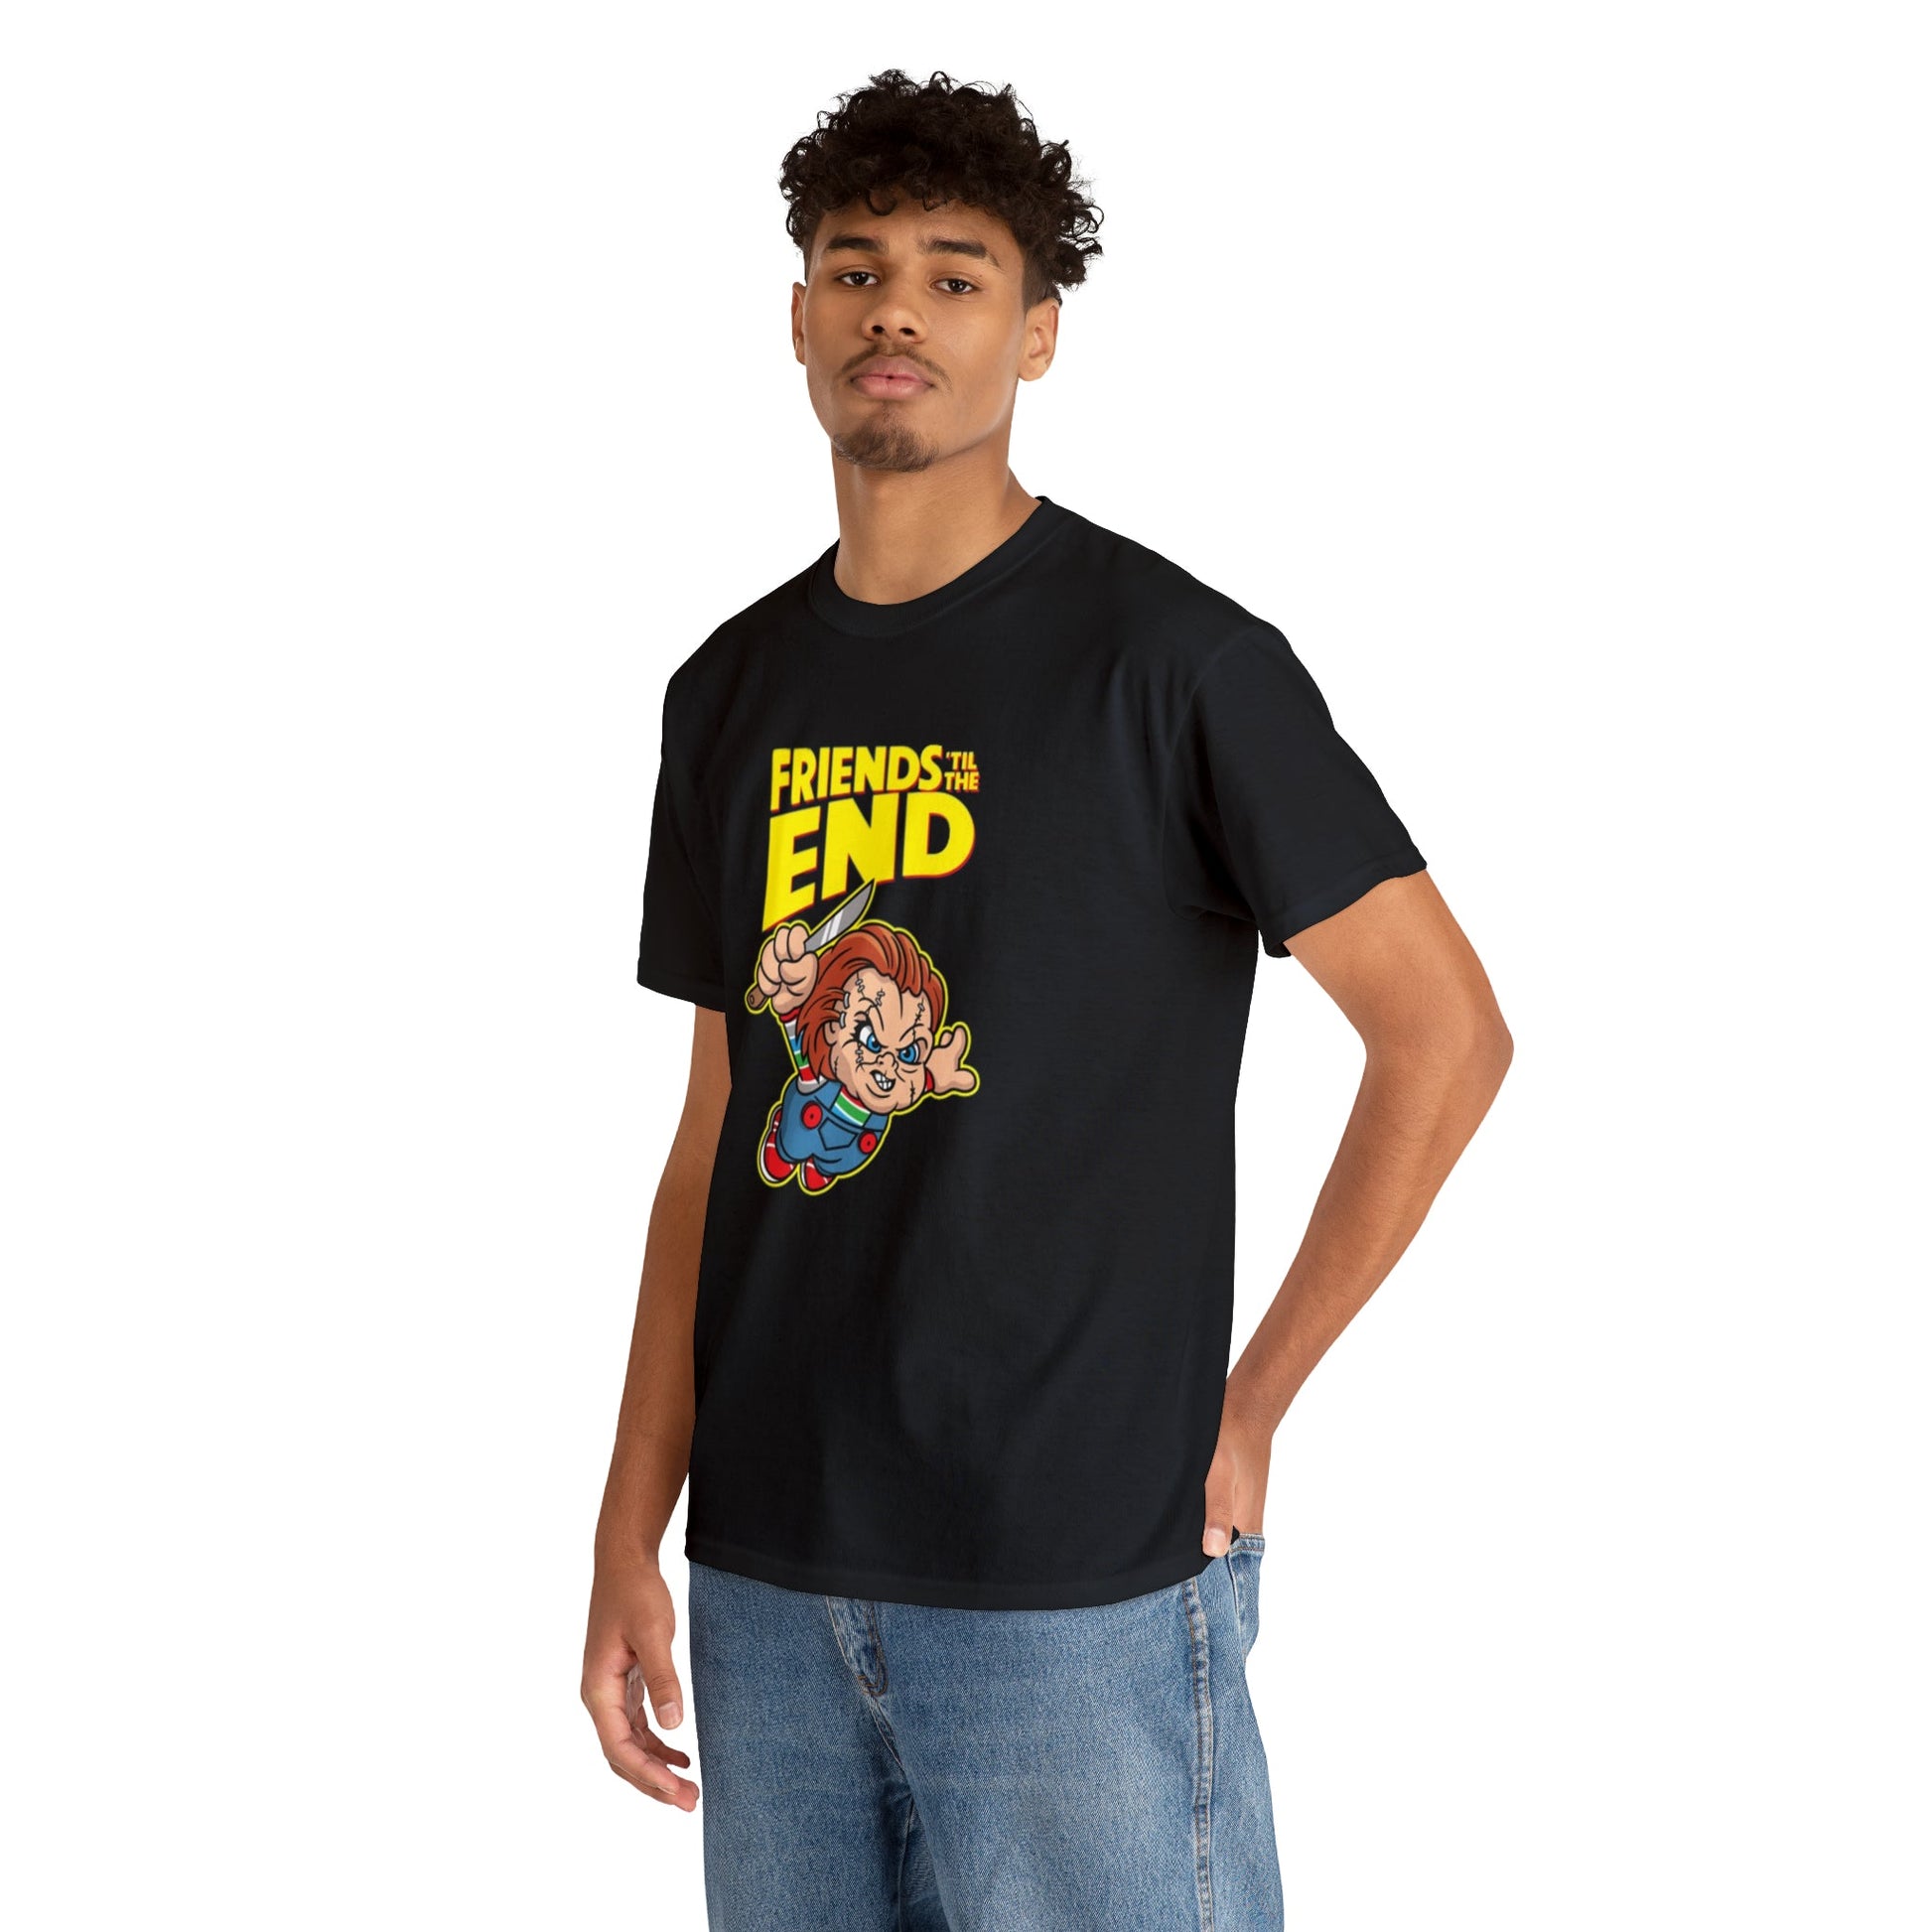 Chucky Good Guys Friends Till The End T-Shirt - RetroTeeShop